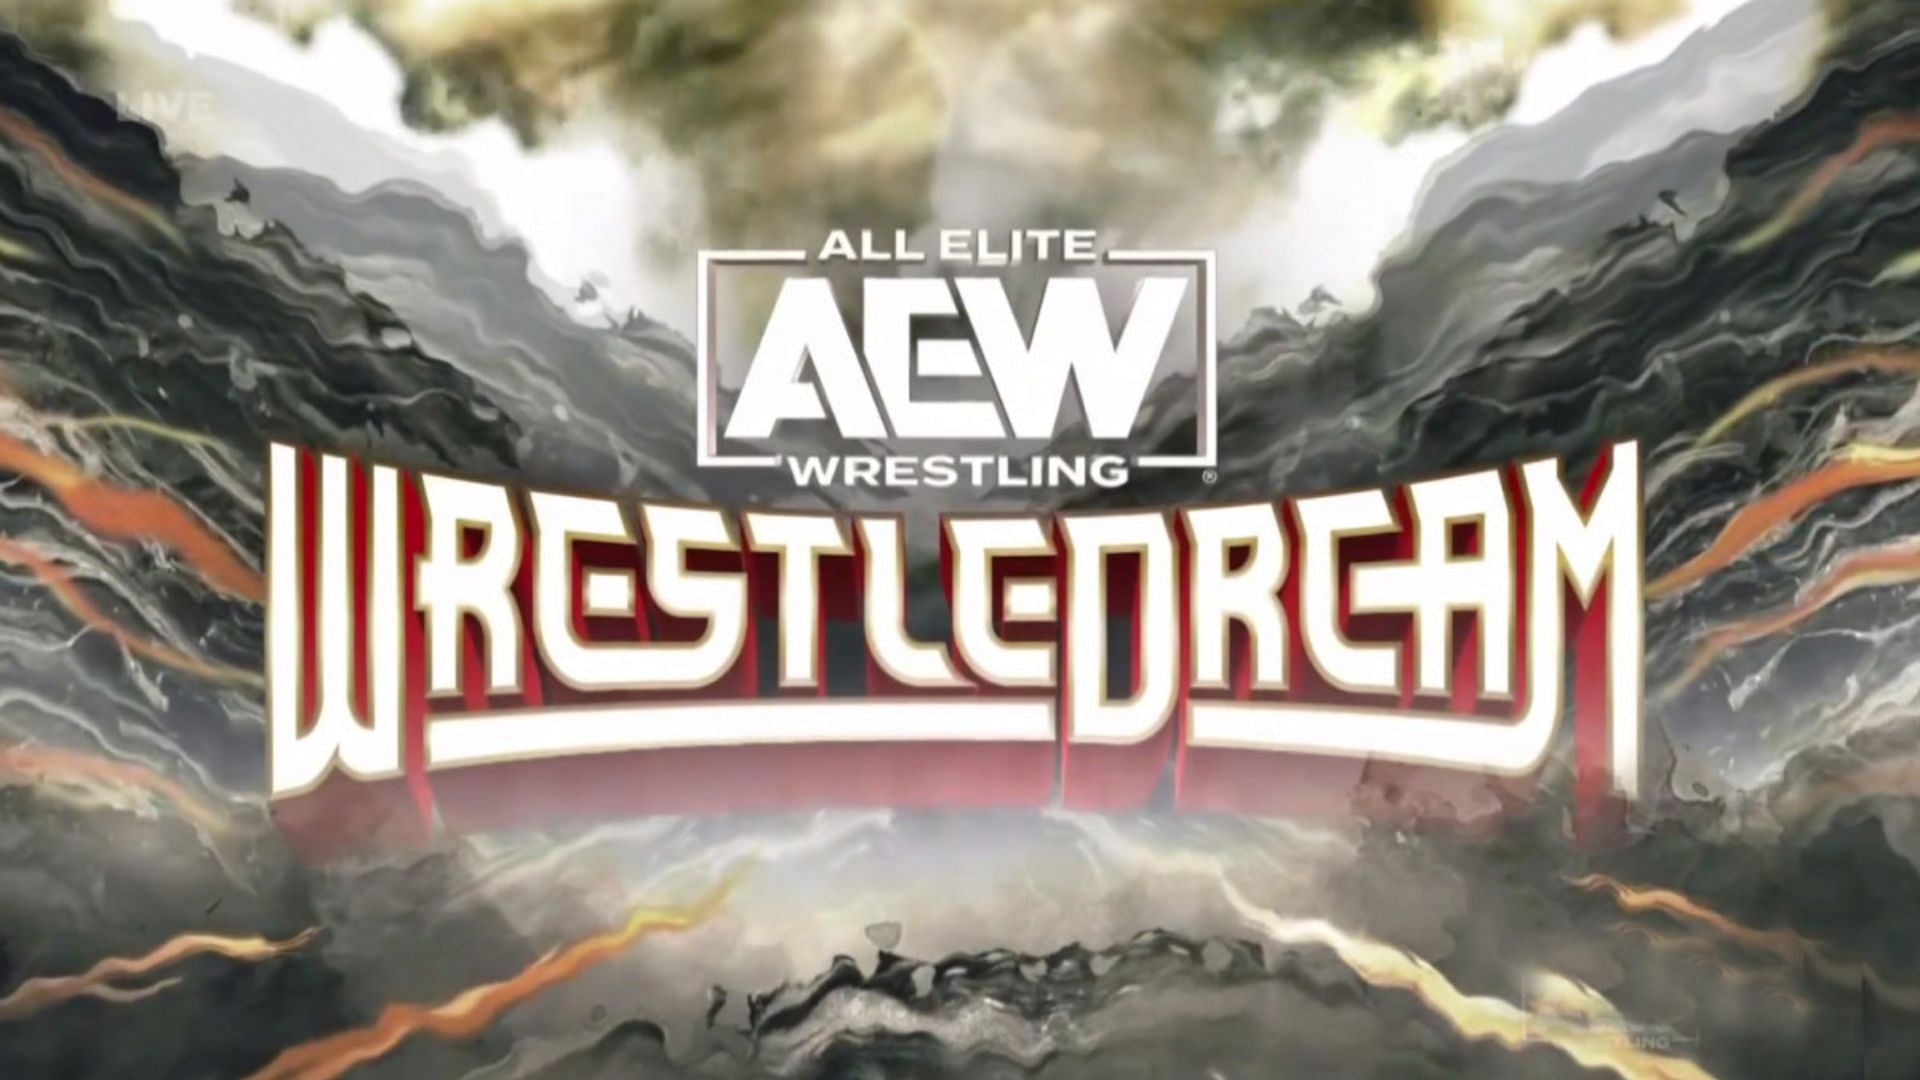 WrestleDream is AEW